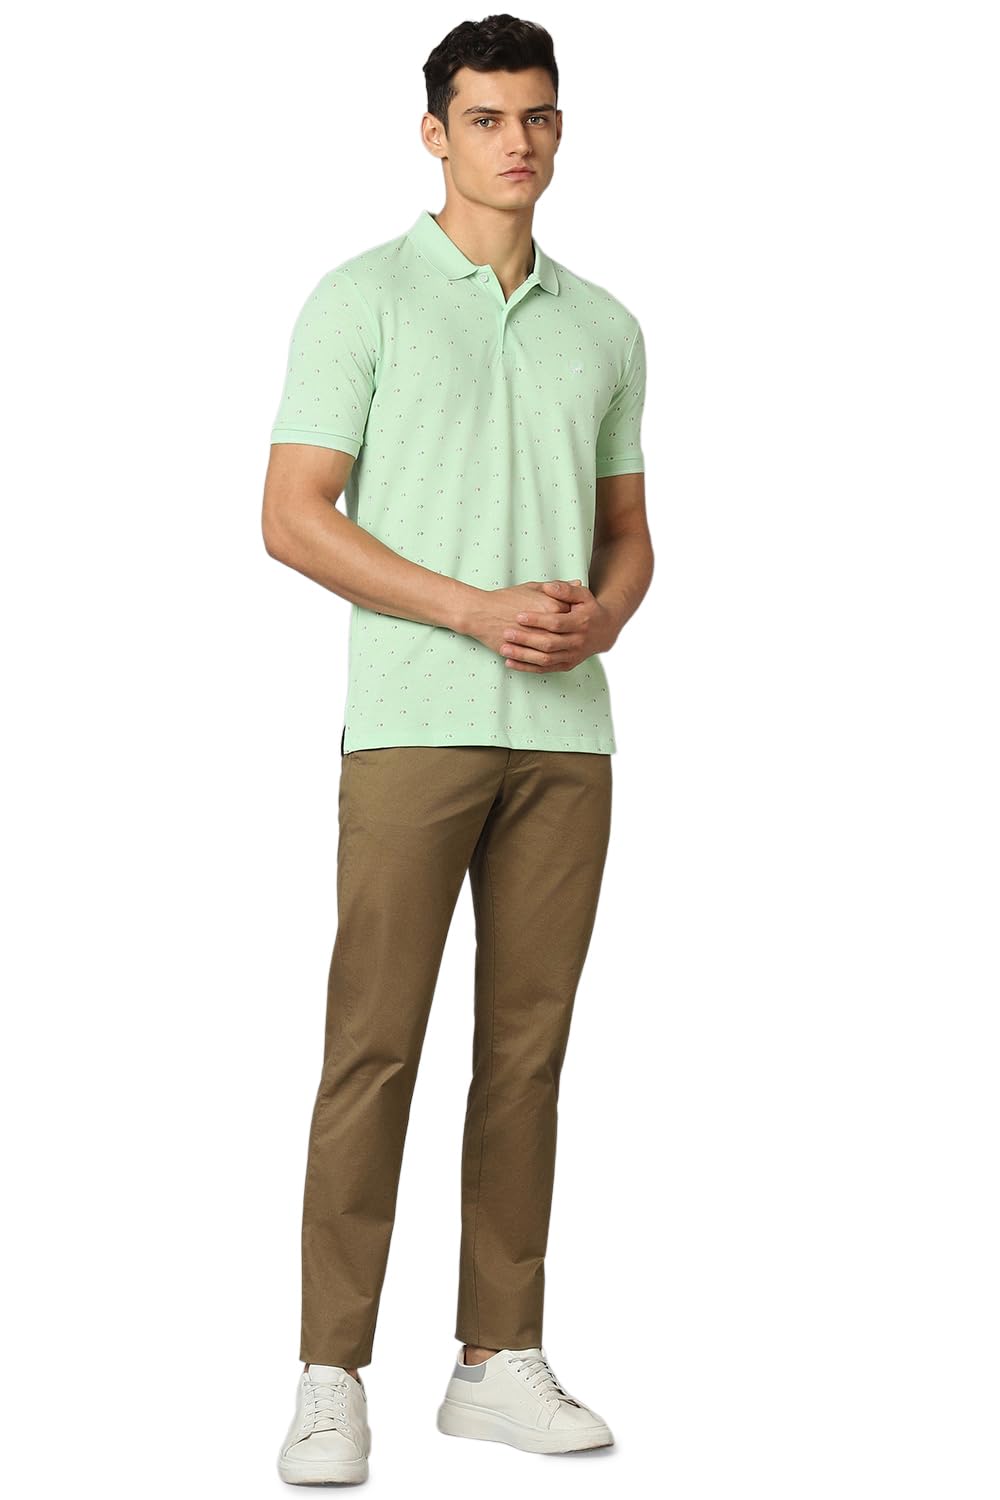 Allen Solly Men's Regular Fit T-Shirt (ASKPQRGFD80079_Green